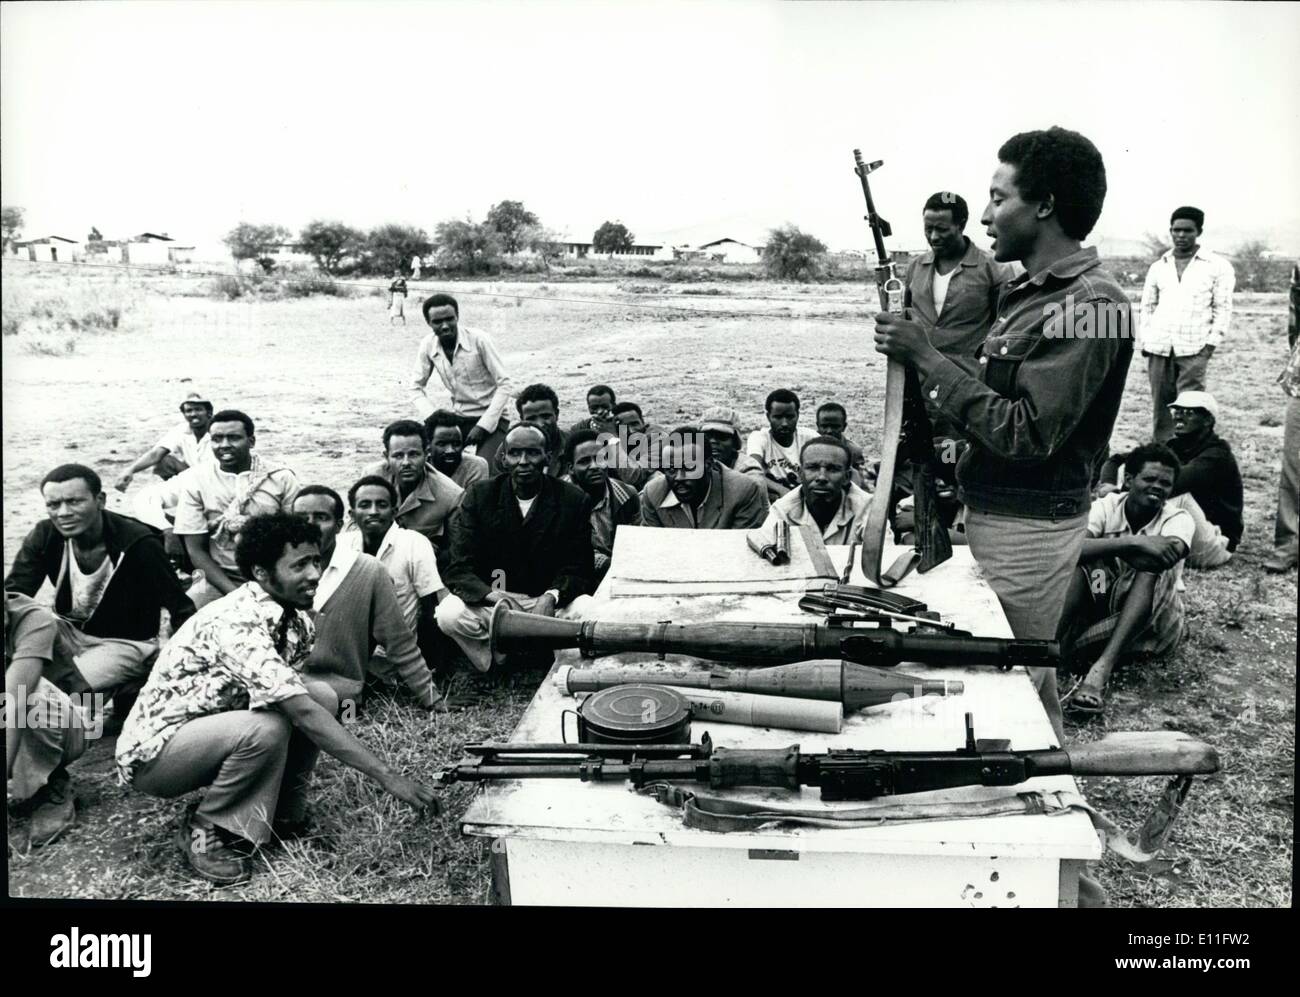 11. November 1977 - Jijiga: Jetzt in Händen der Somali: Truppenübungsplatz für die Western Somali Liberation Front Rekruten am Stadtrand von Jijiga. In diesem Lager 400 neue Rekruten sind Schulungen in Umgang mit verschiedenen klein- und Anti-Tack-Raketen. Stockfoto